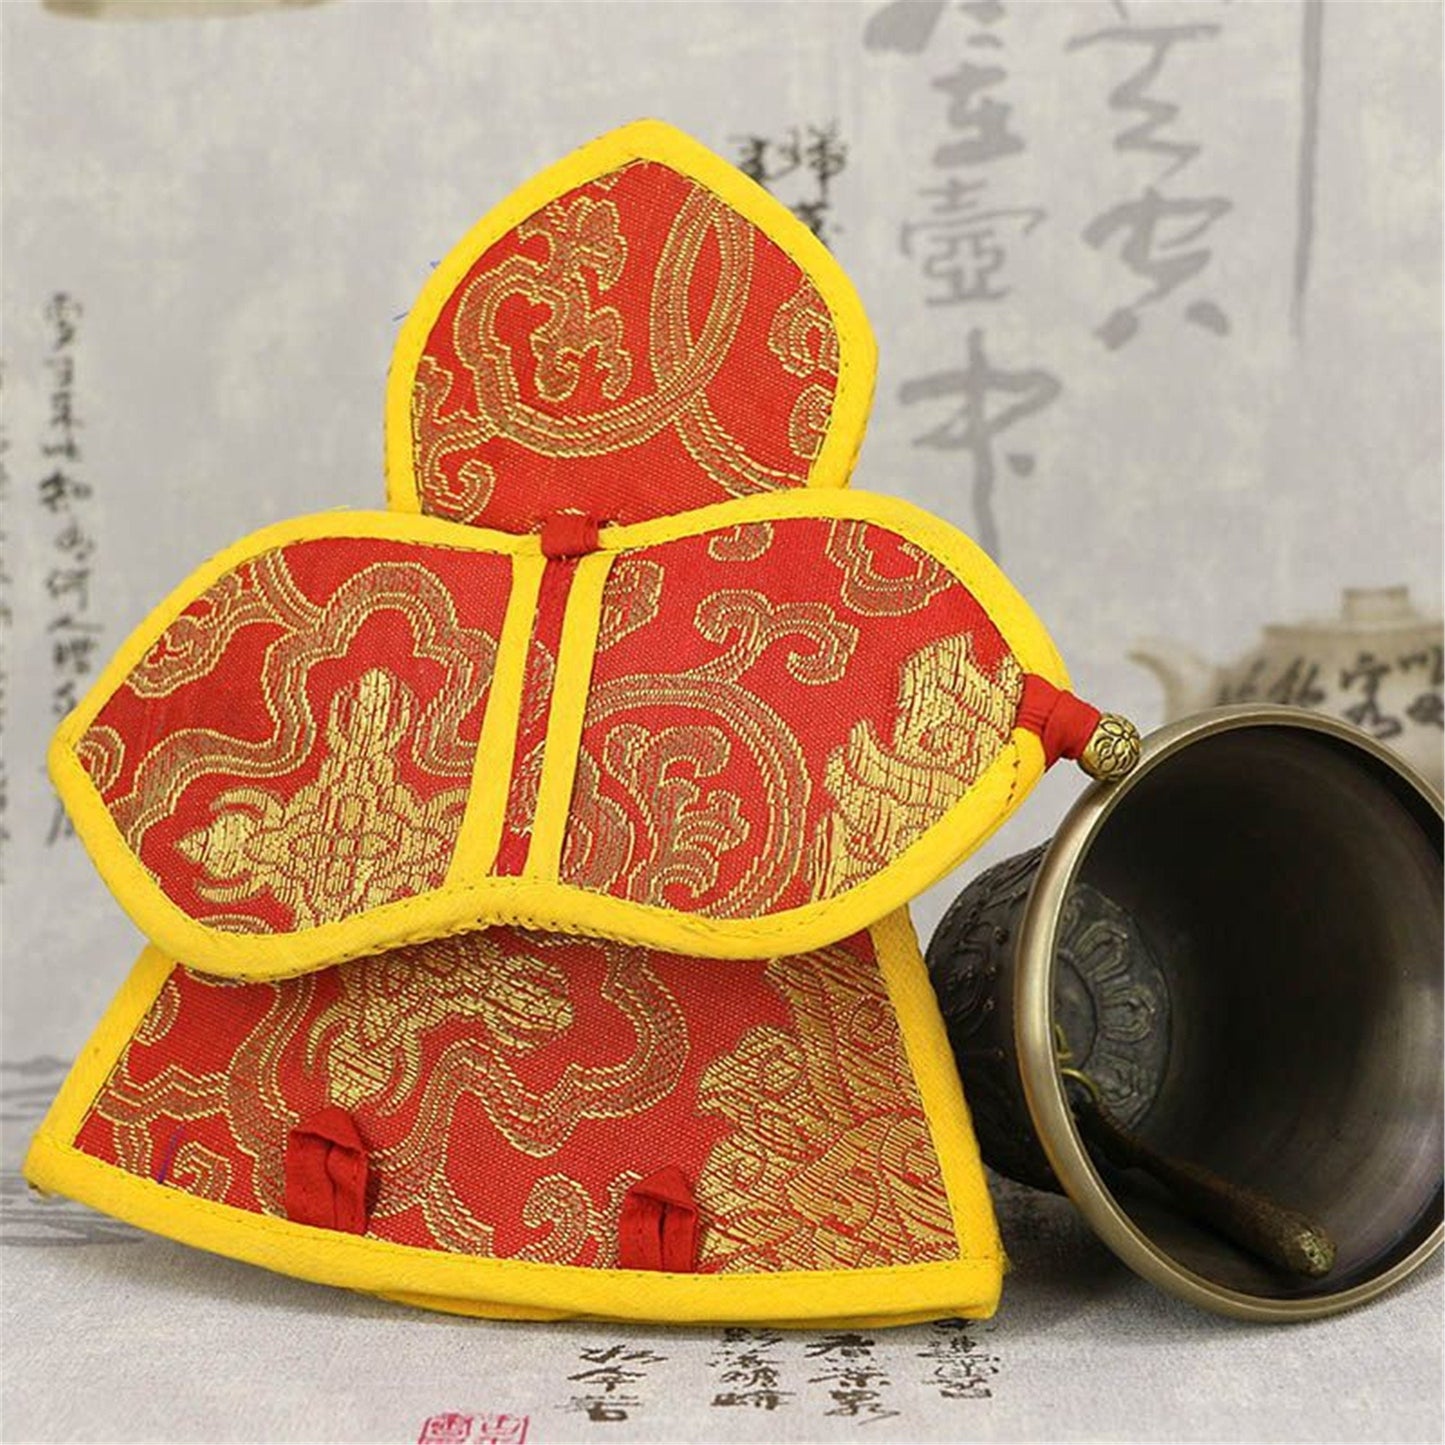 Gandhanra Hand-embroidered Silk Case for Tibetan Bells and Vajra,For Meditation,Yoga